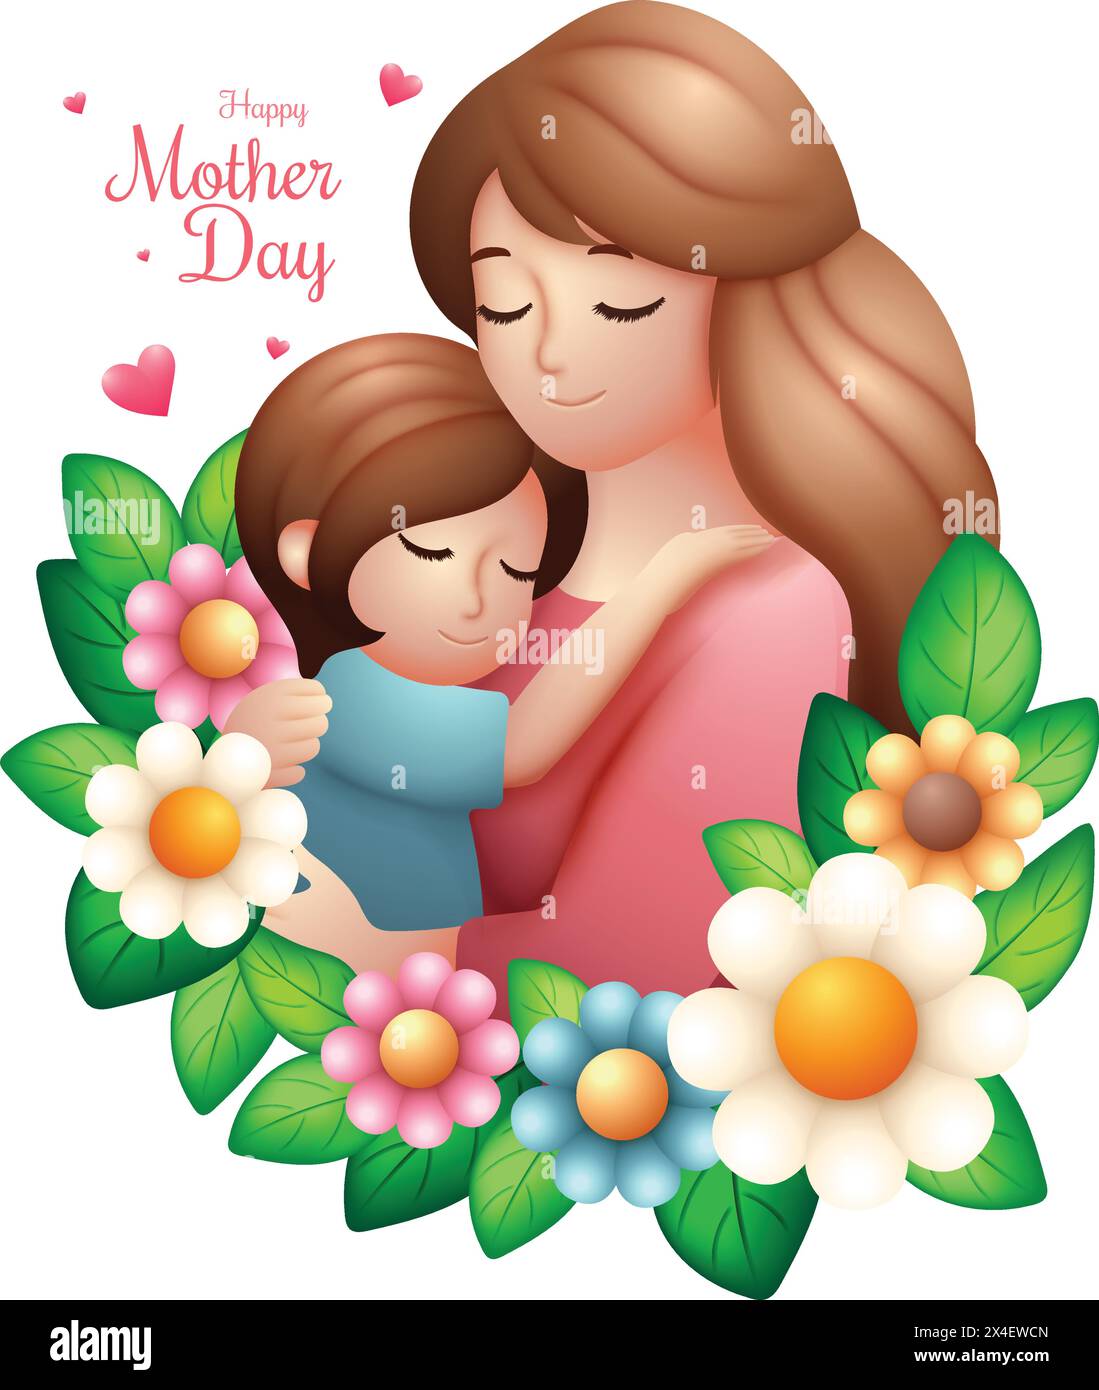 Clipart heureux de fête des mères, mère heureuse embrasse sa fille bien-aimée 3d illustration vectorielle Illustration de Vecteur